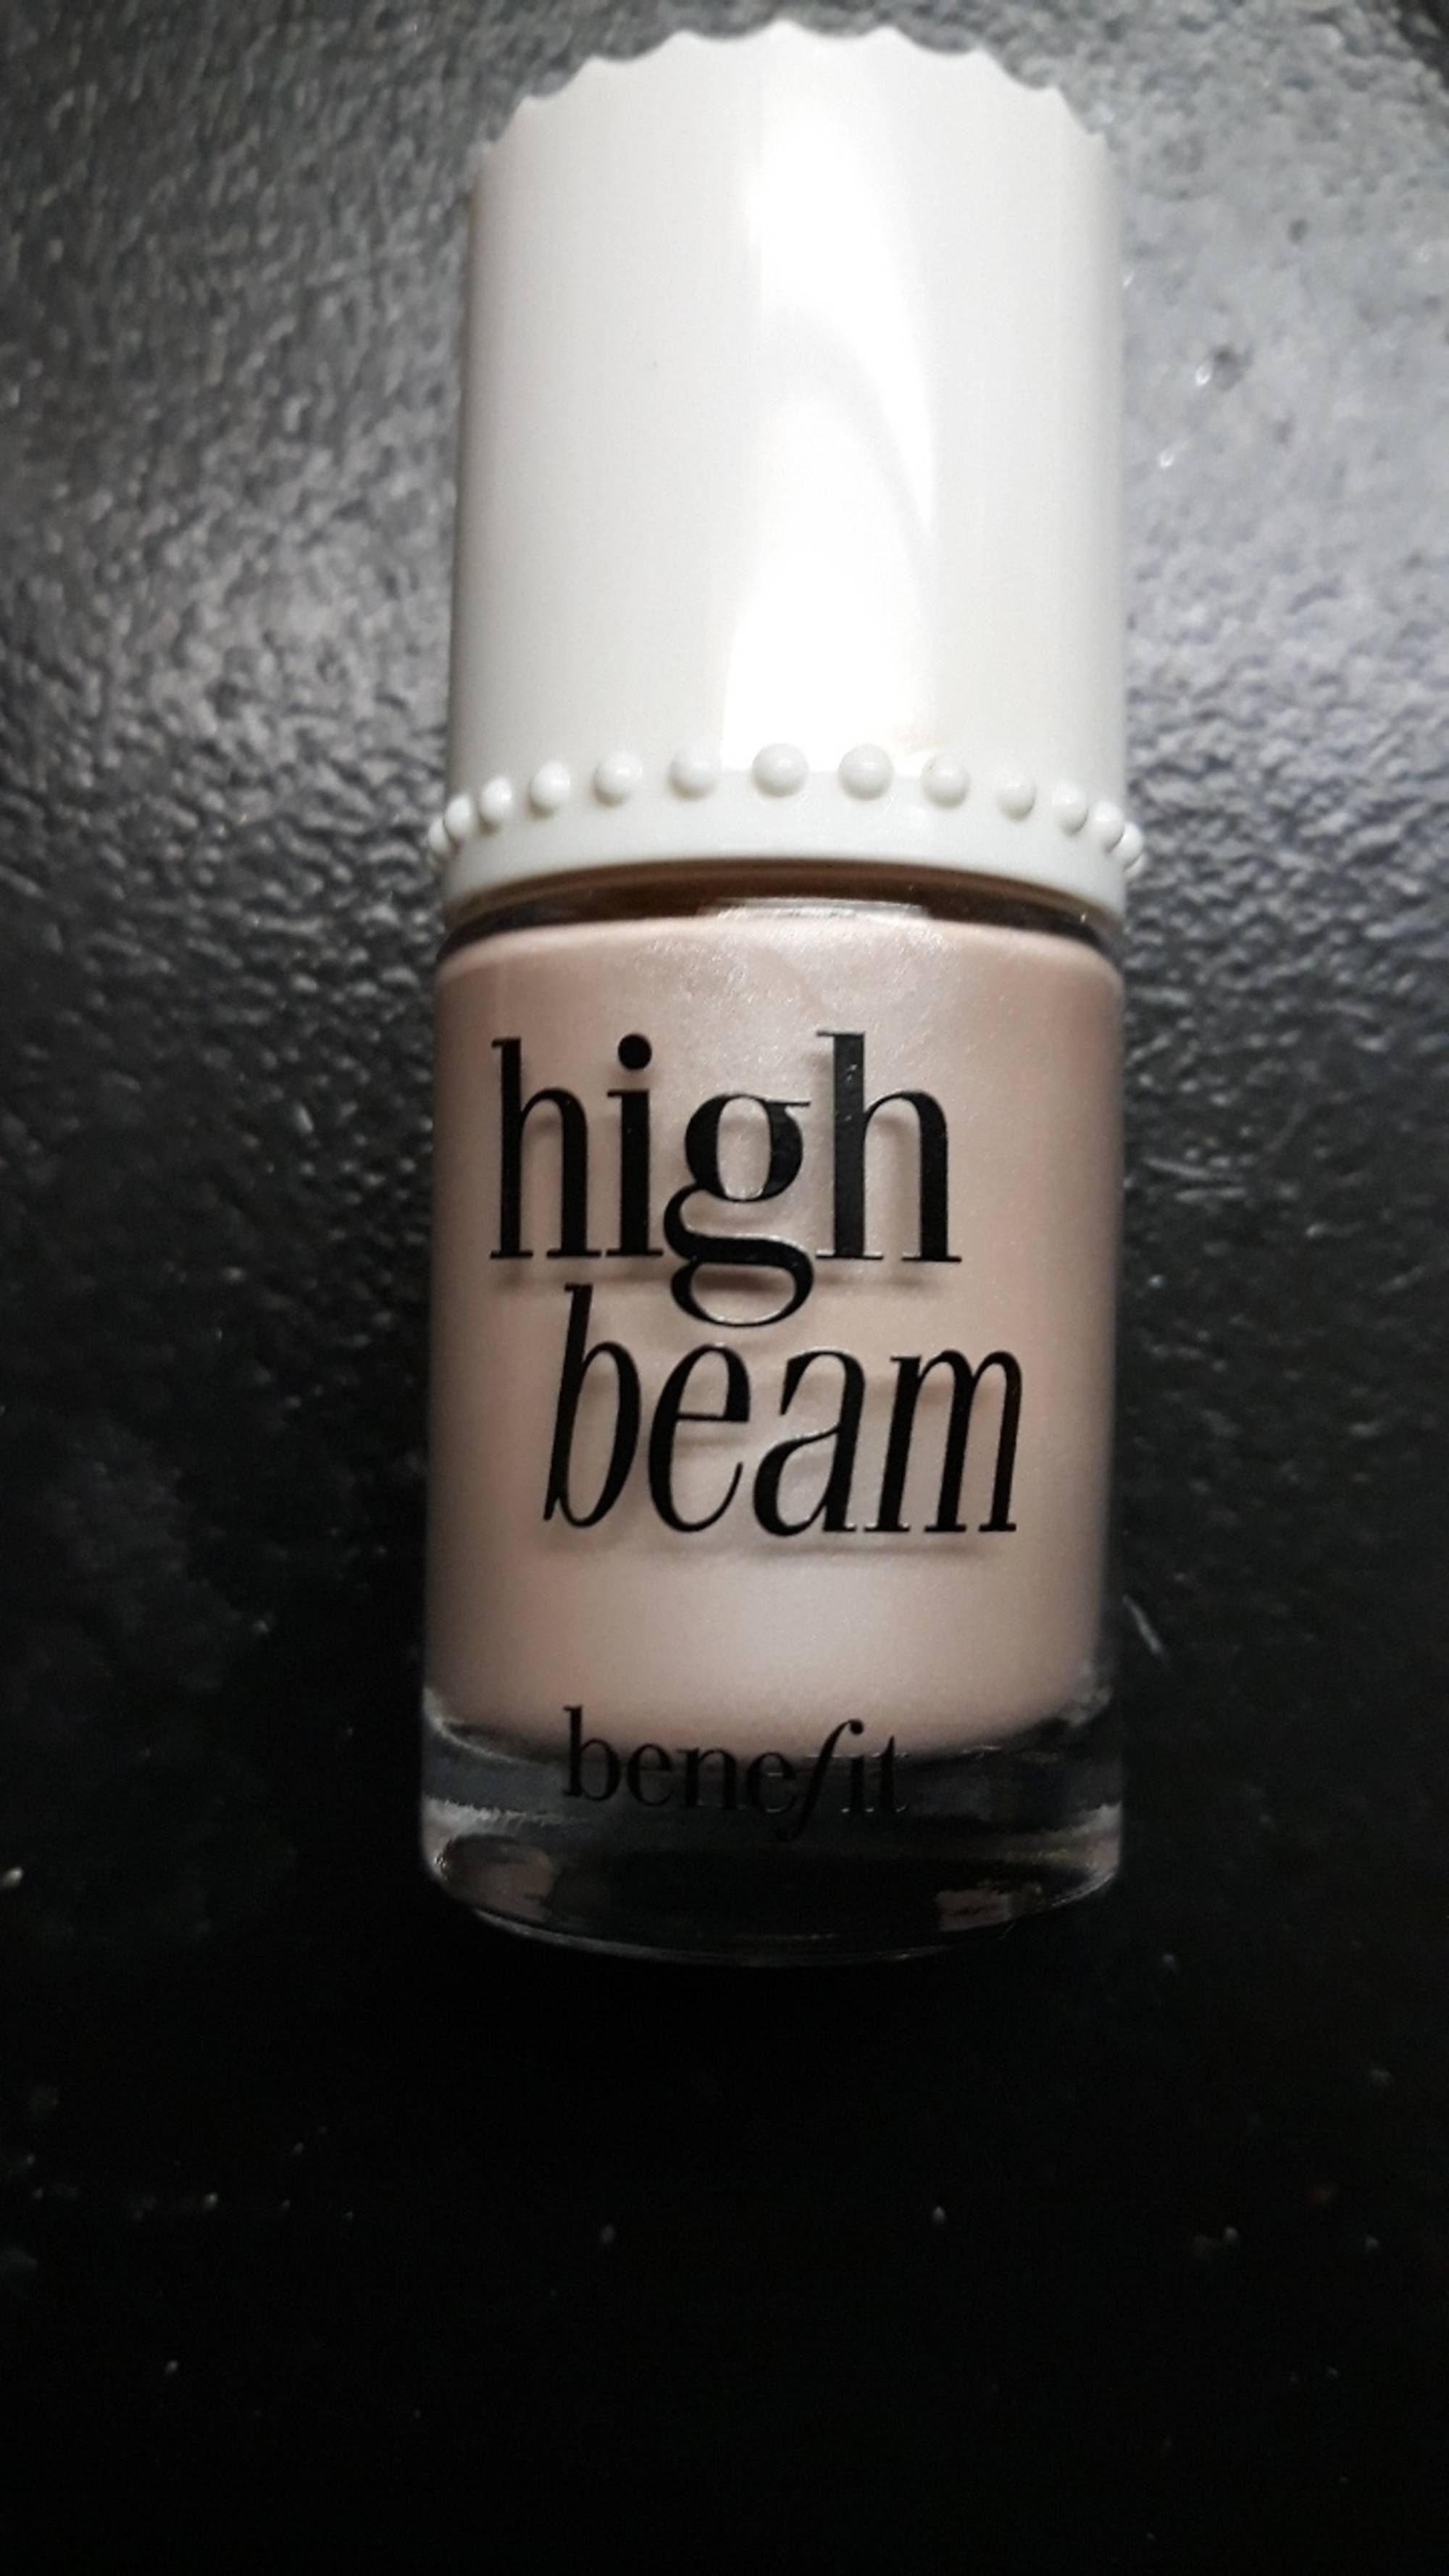 BENEFIT - High beam - Teint highlighter